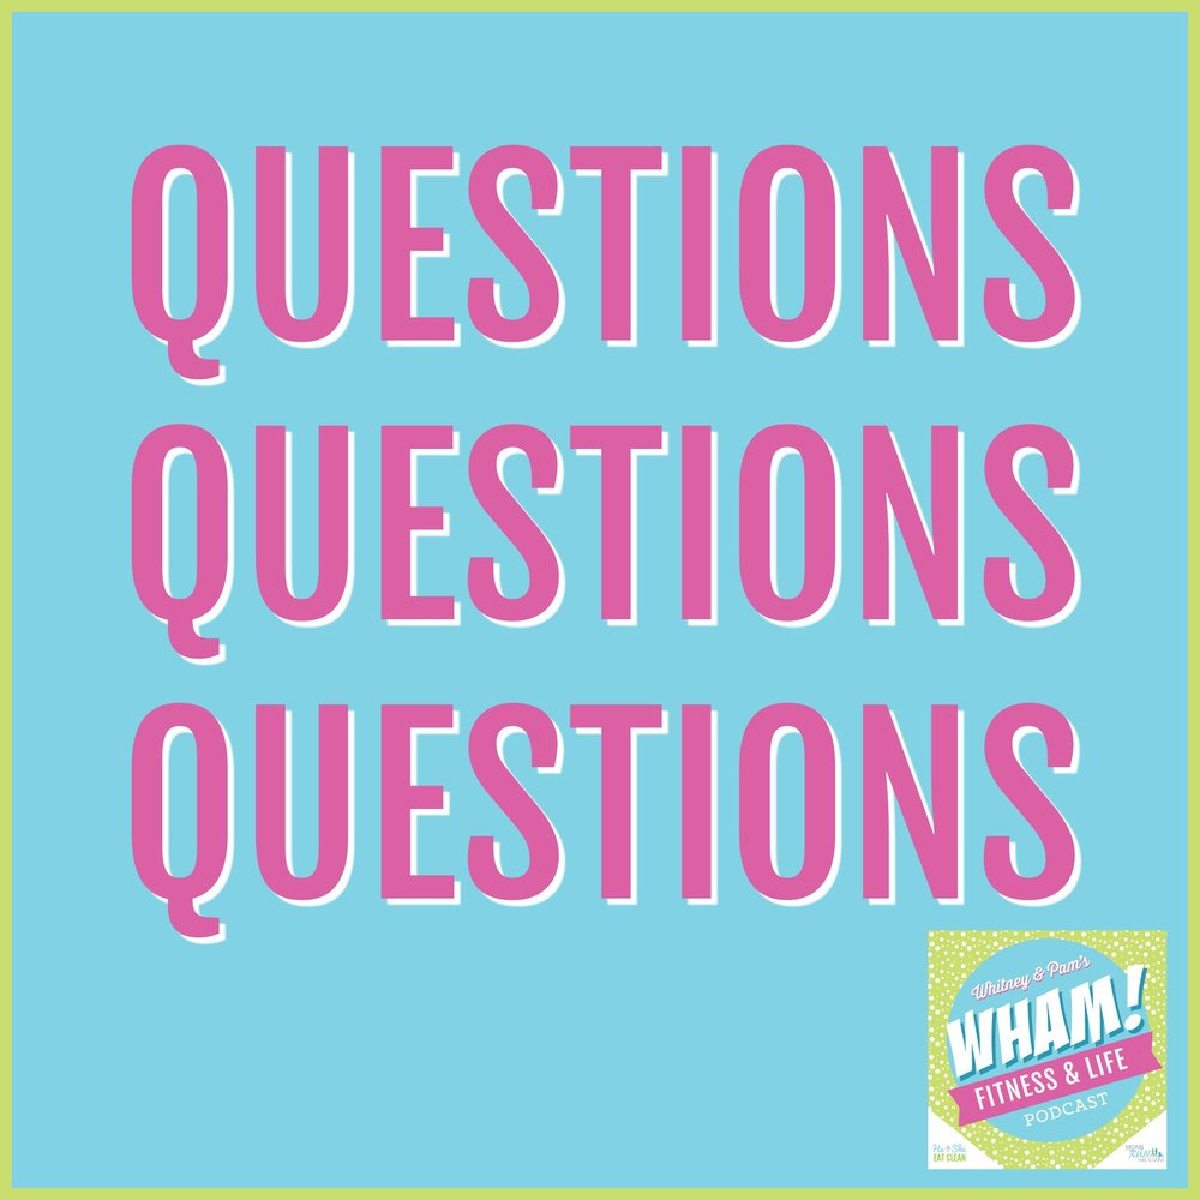 text reads Questions, Questions, Questions - WHAM Podcast